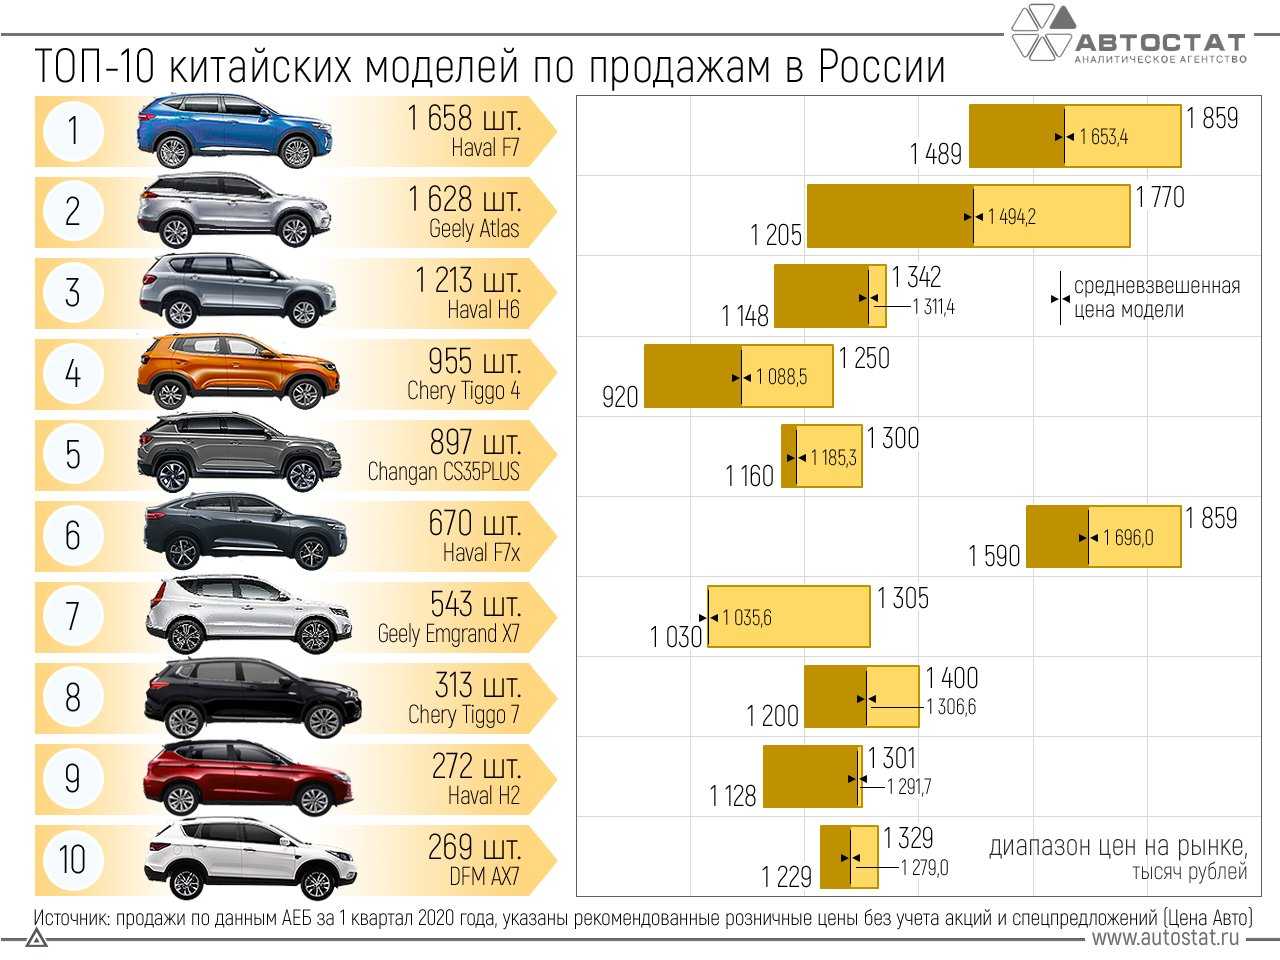 Рейтинг машин за 500 000 рублей в 2022 году